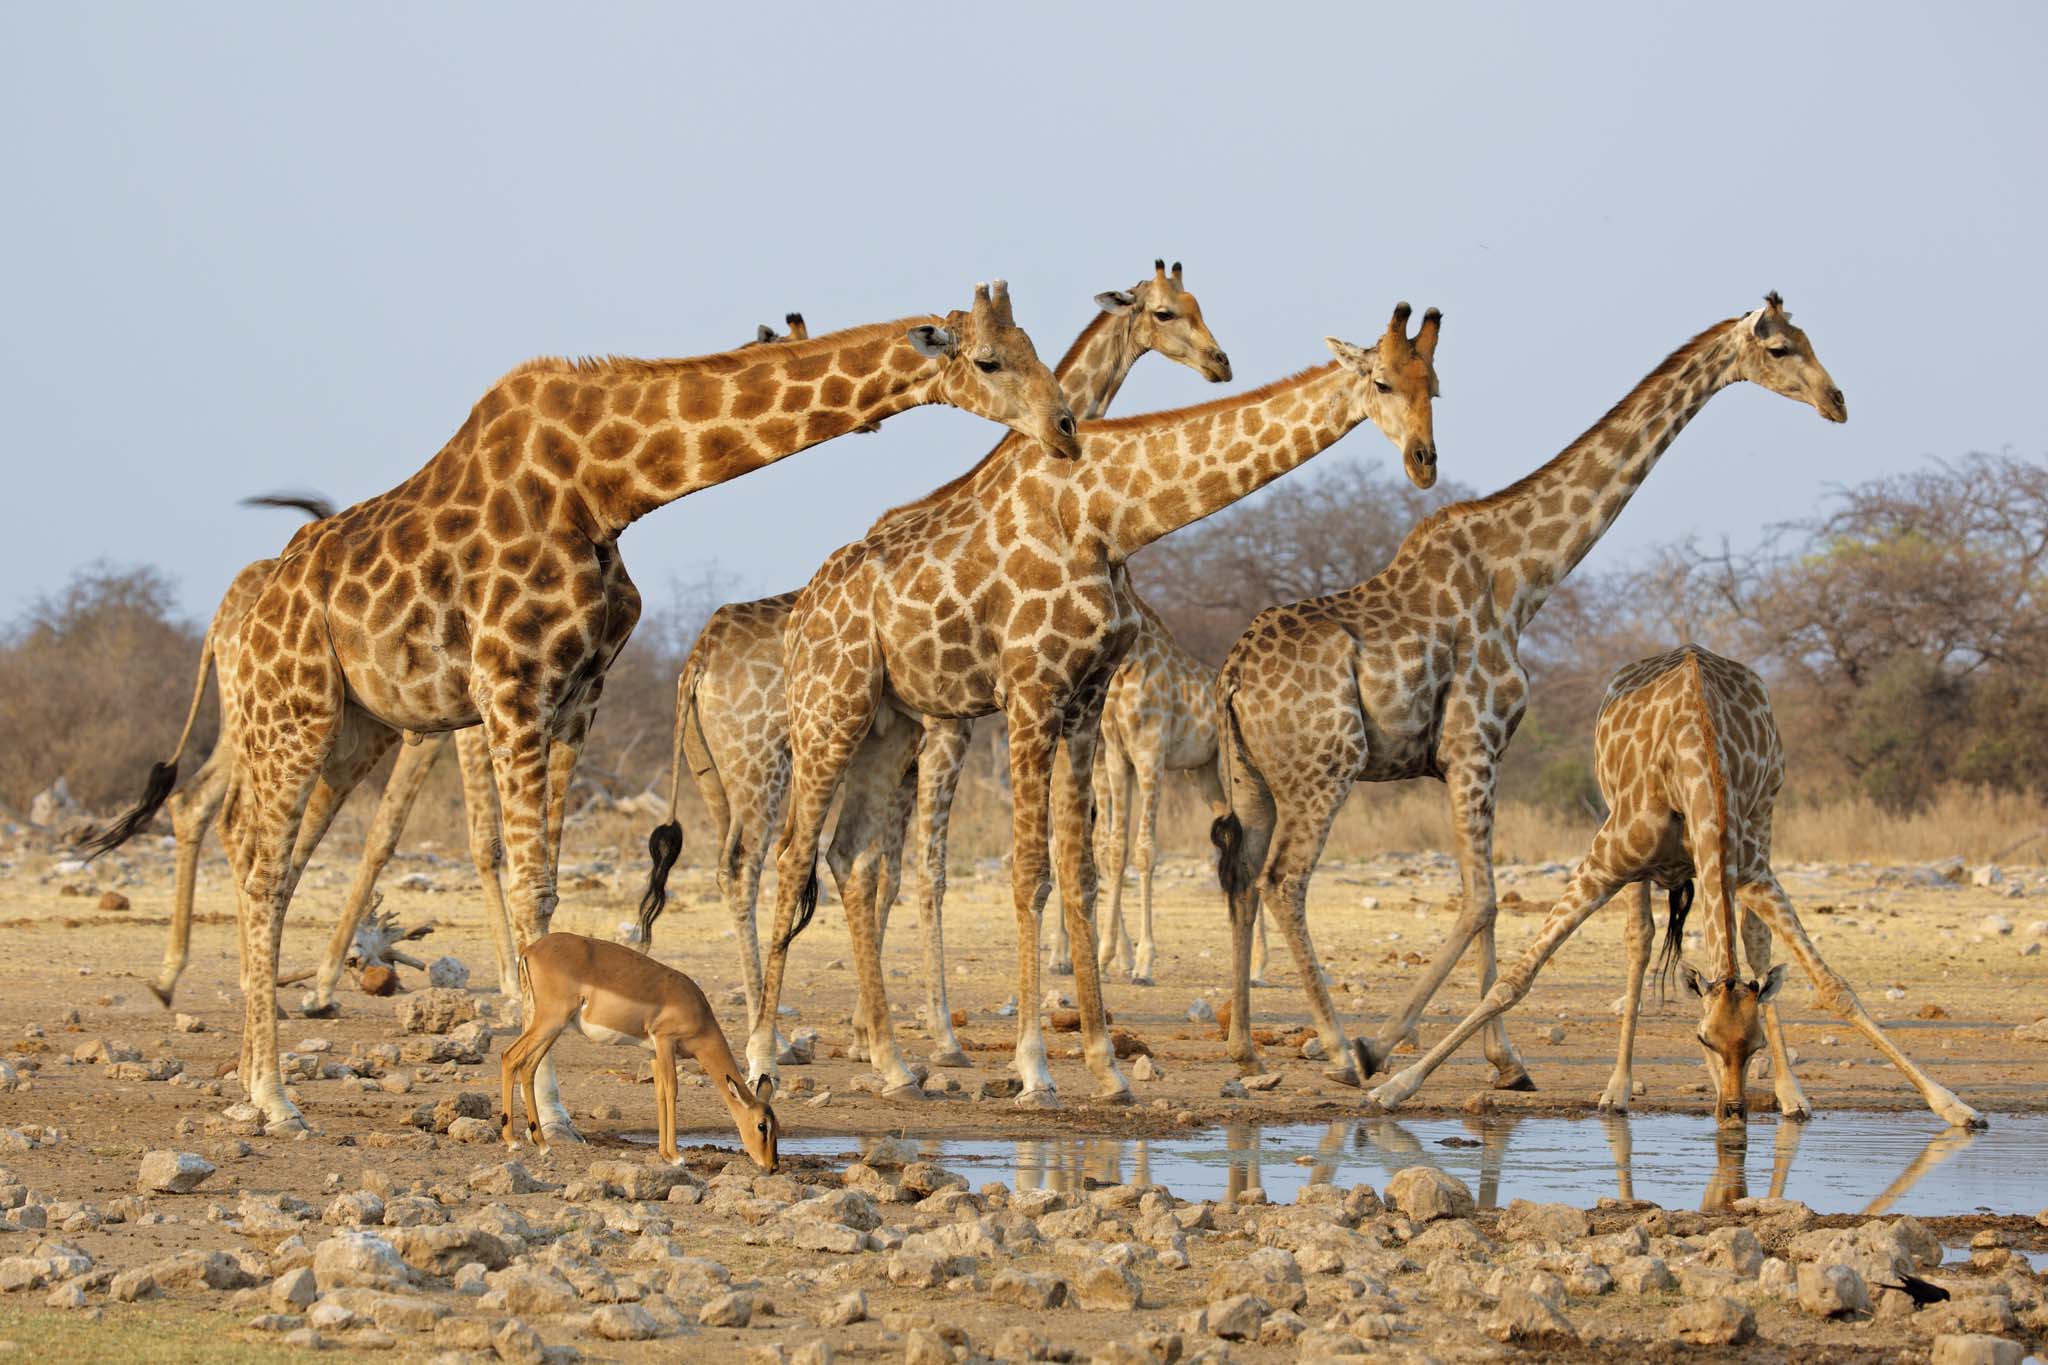 Giraffe herd at Etosha National Park.